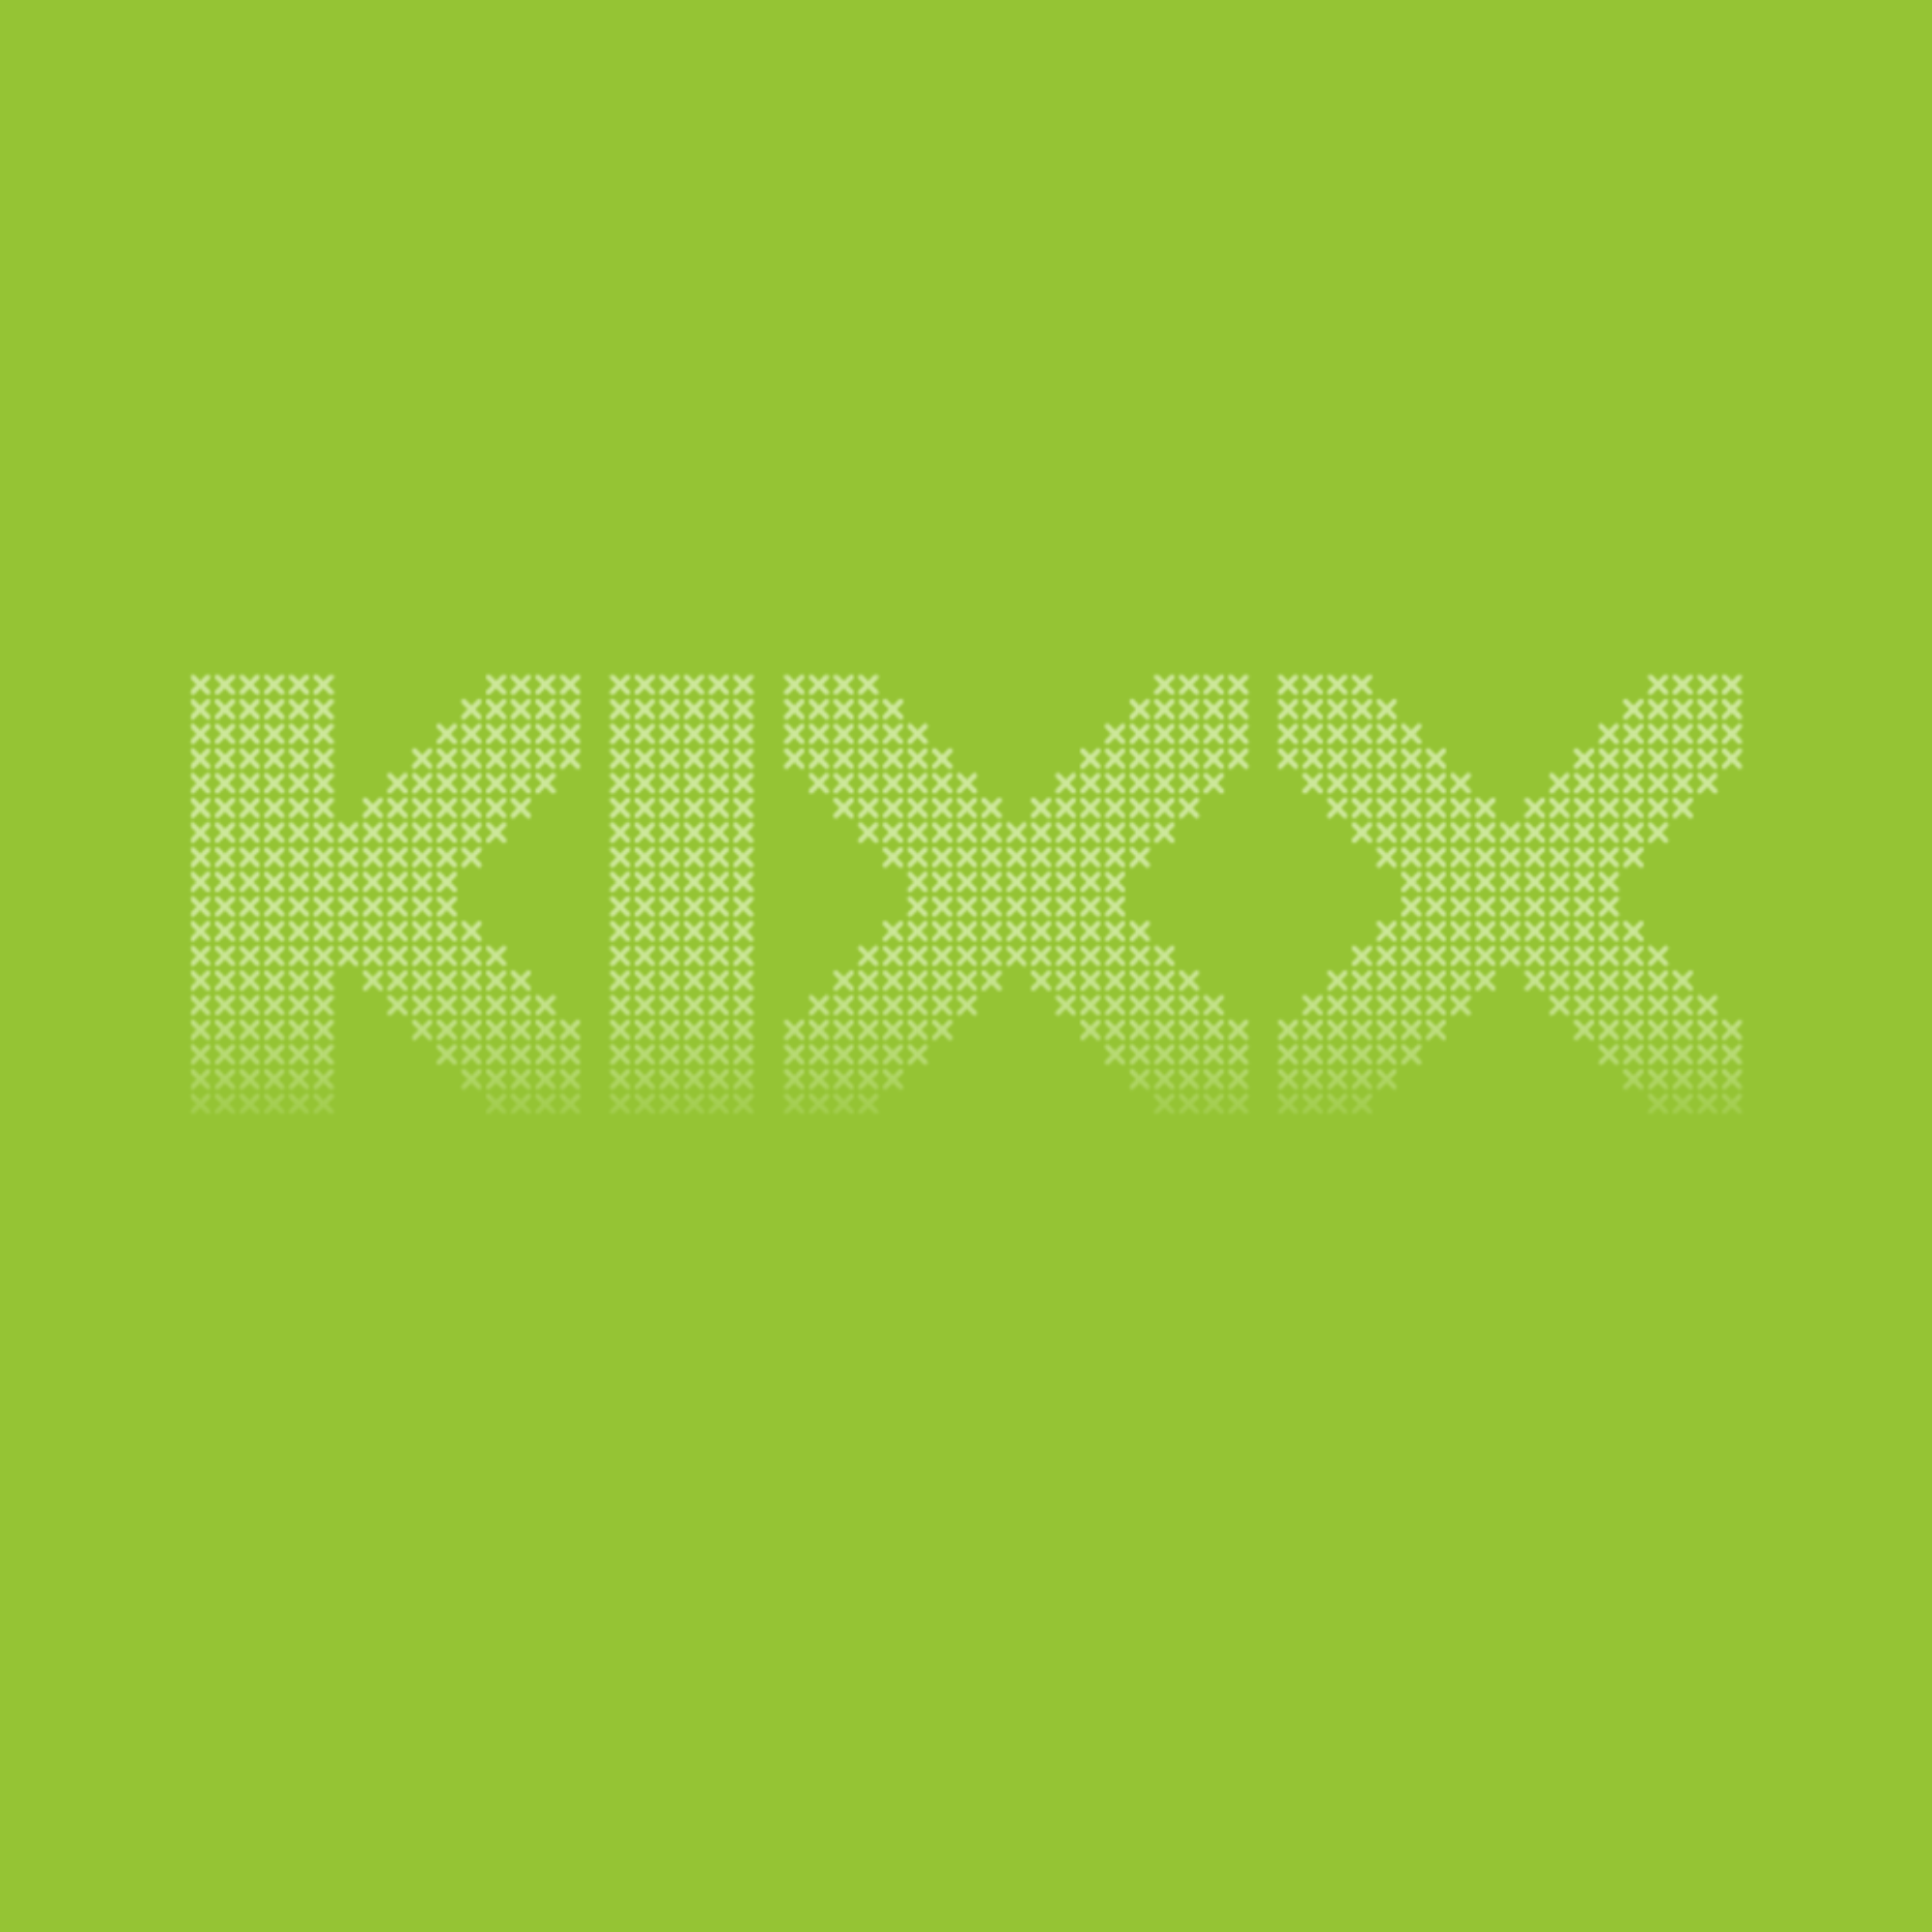 kixx